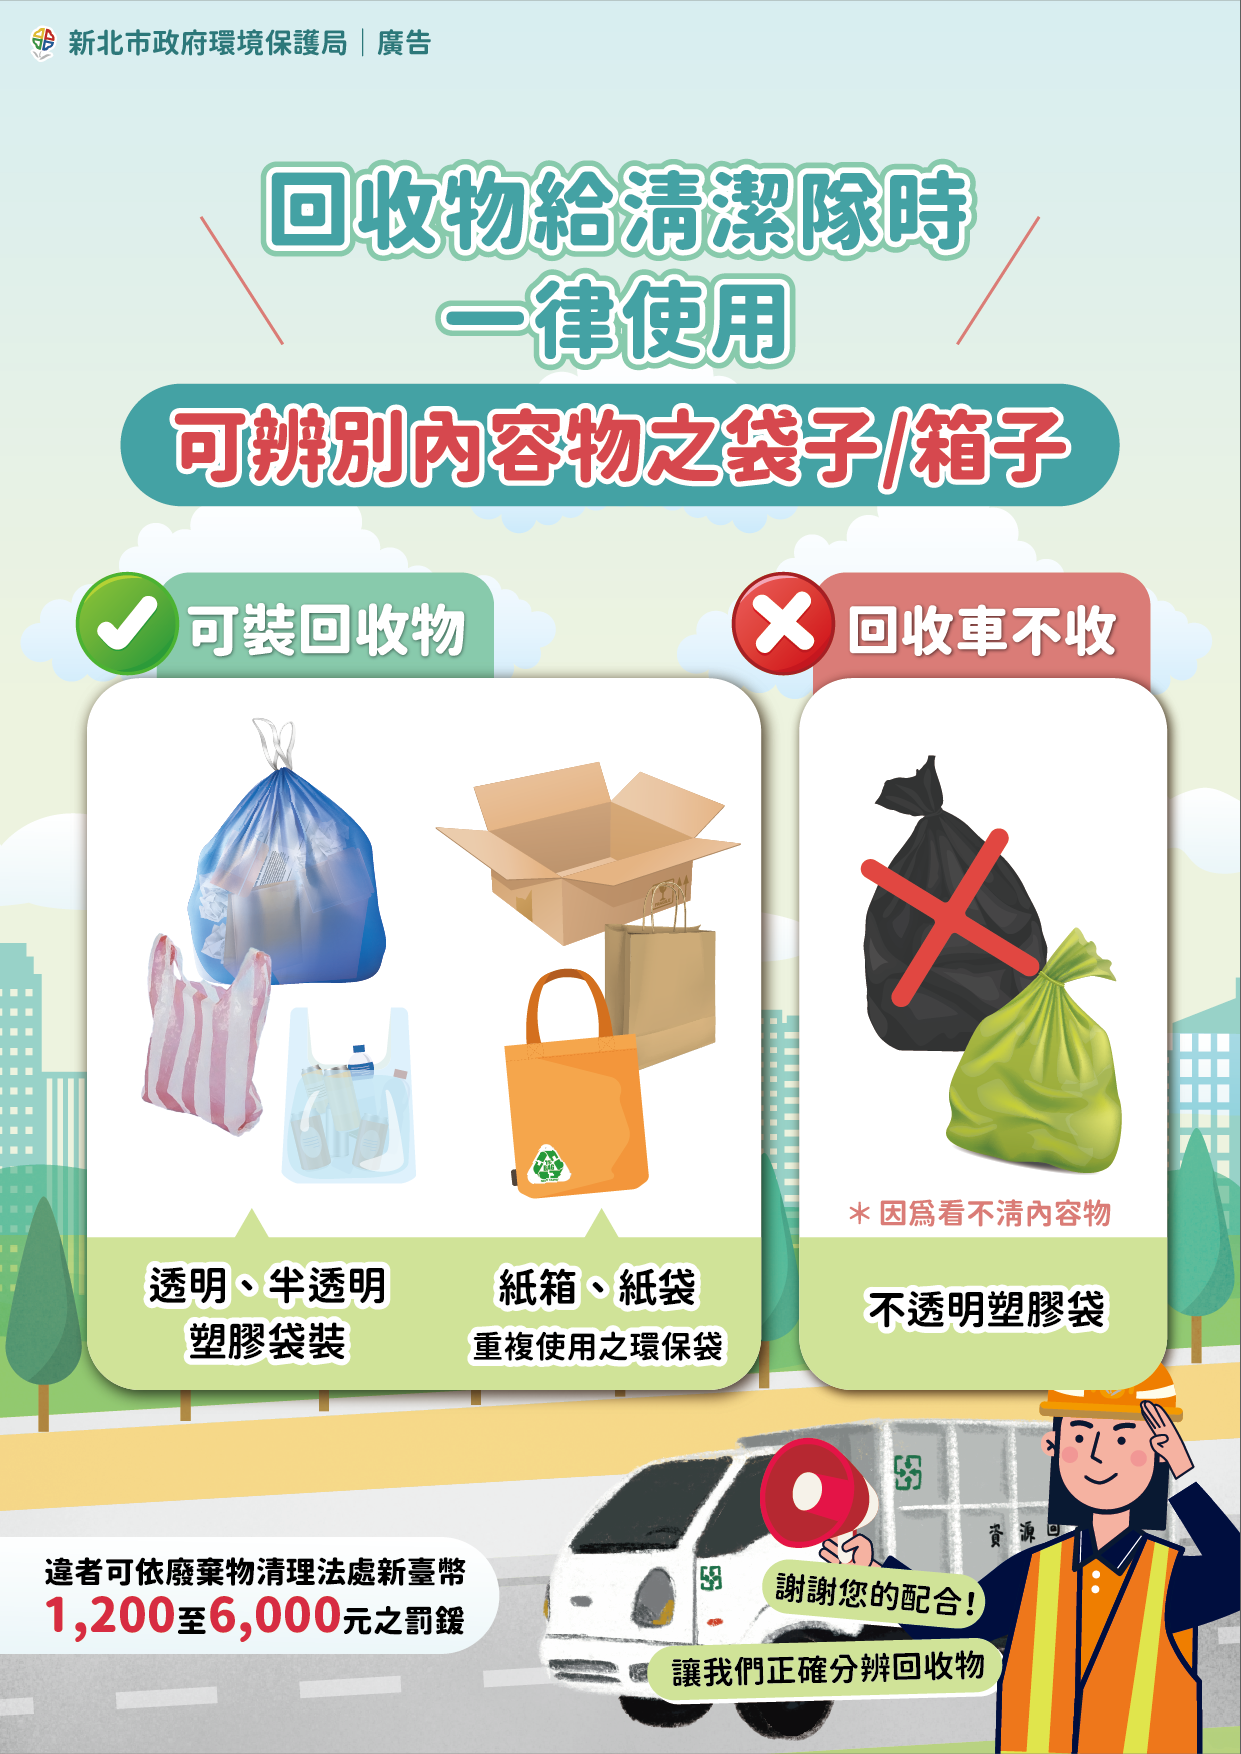 2.新北市環保局公告如以塑膠袋盛裝回收物，其外觀須為可辨明內容物之透明或半透明材質